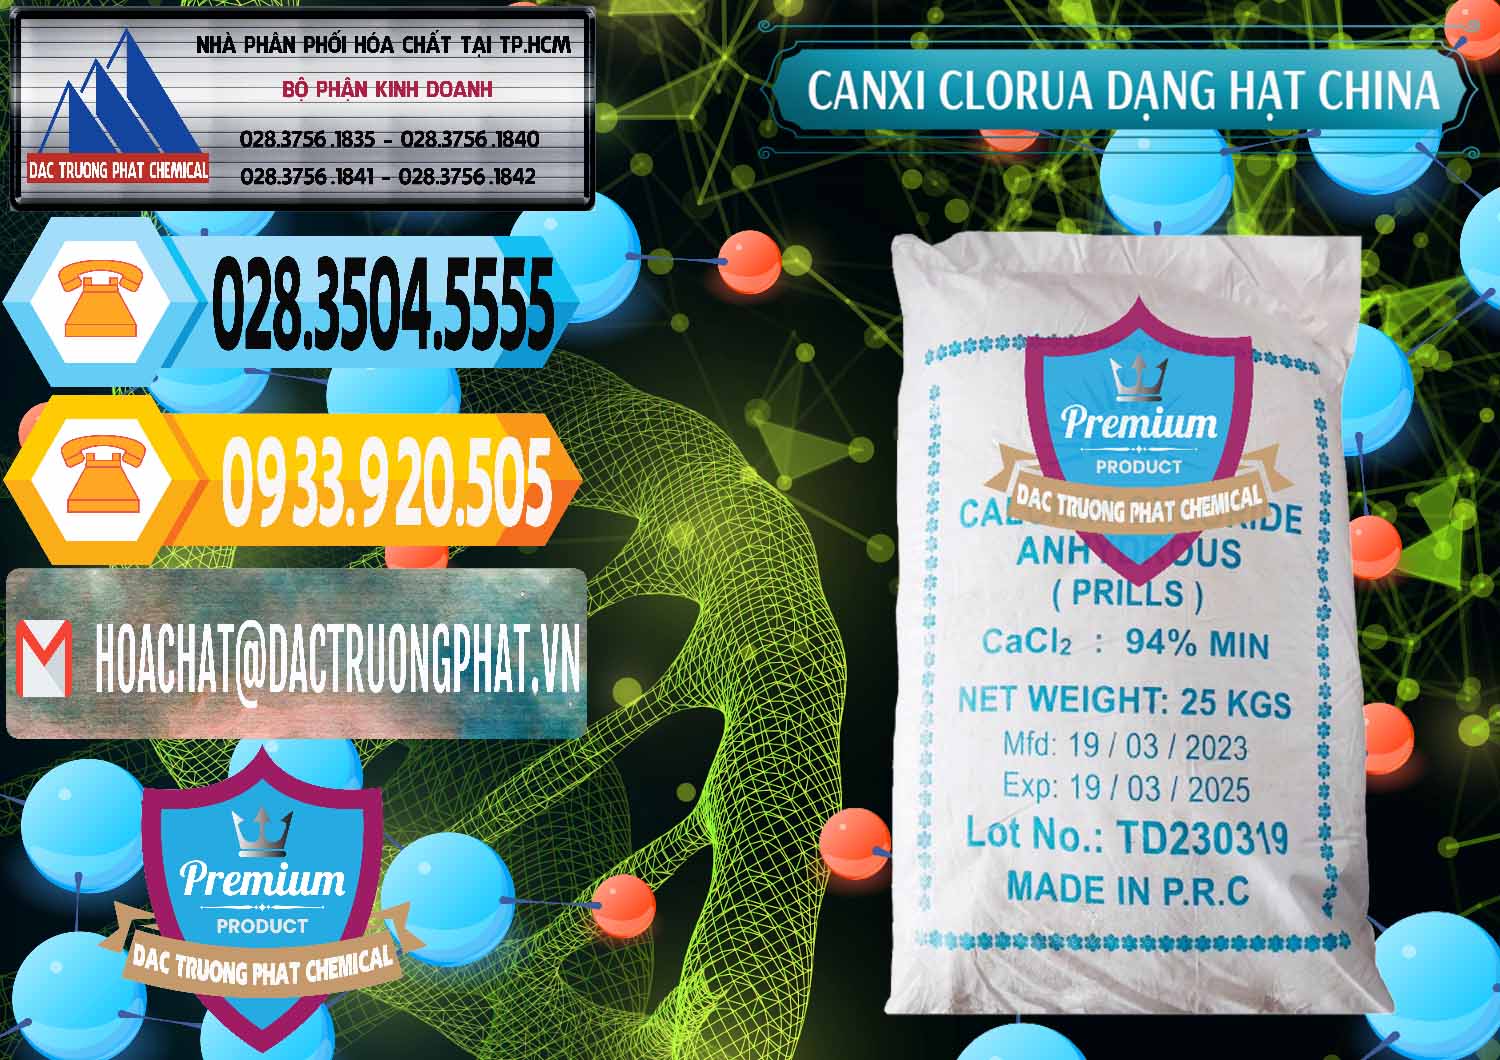 Công ty chuyên bán & cung ứng CaCl2 – Canxi Clorua 94% Dạng Hạt Trung Quốc China - 0373 - Công ty cung cấp và phân phối hóa chất tại TP.HCM - hoachattayrua.net